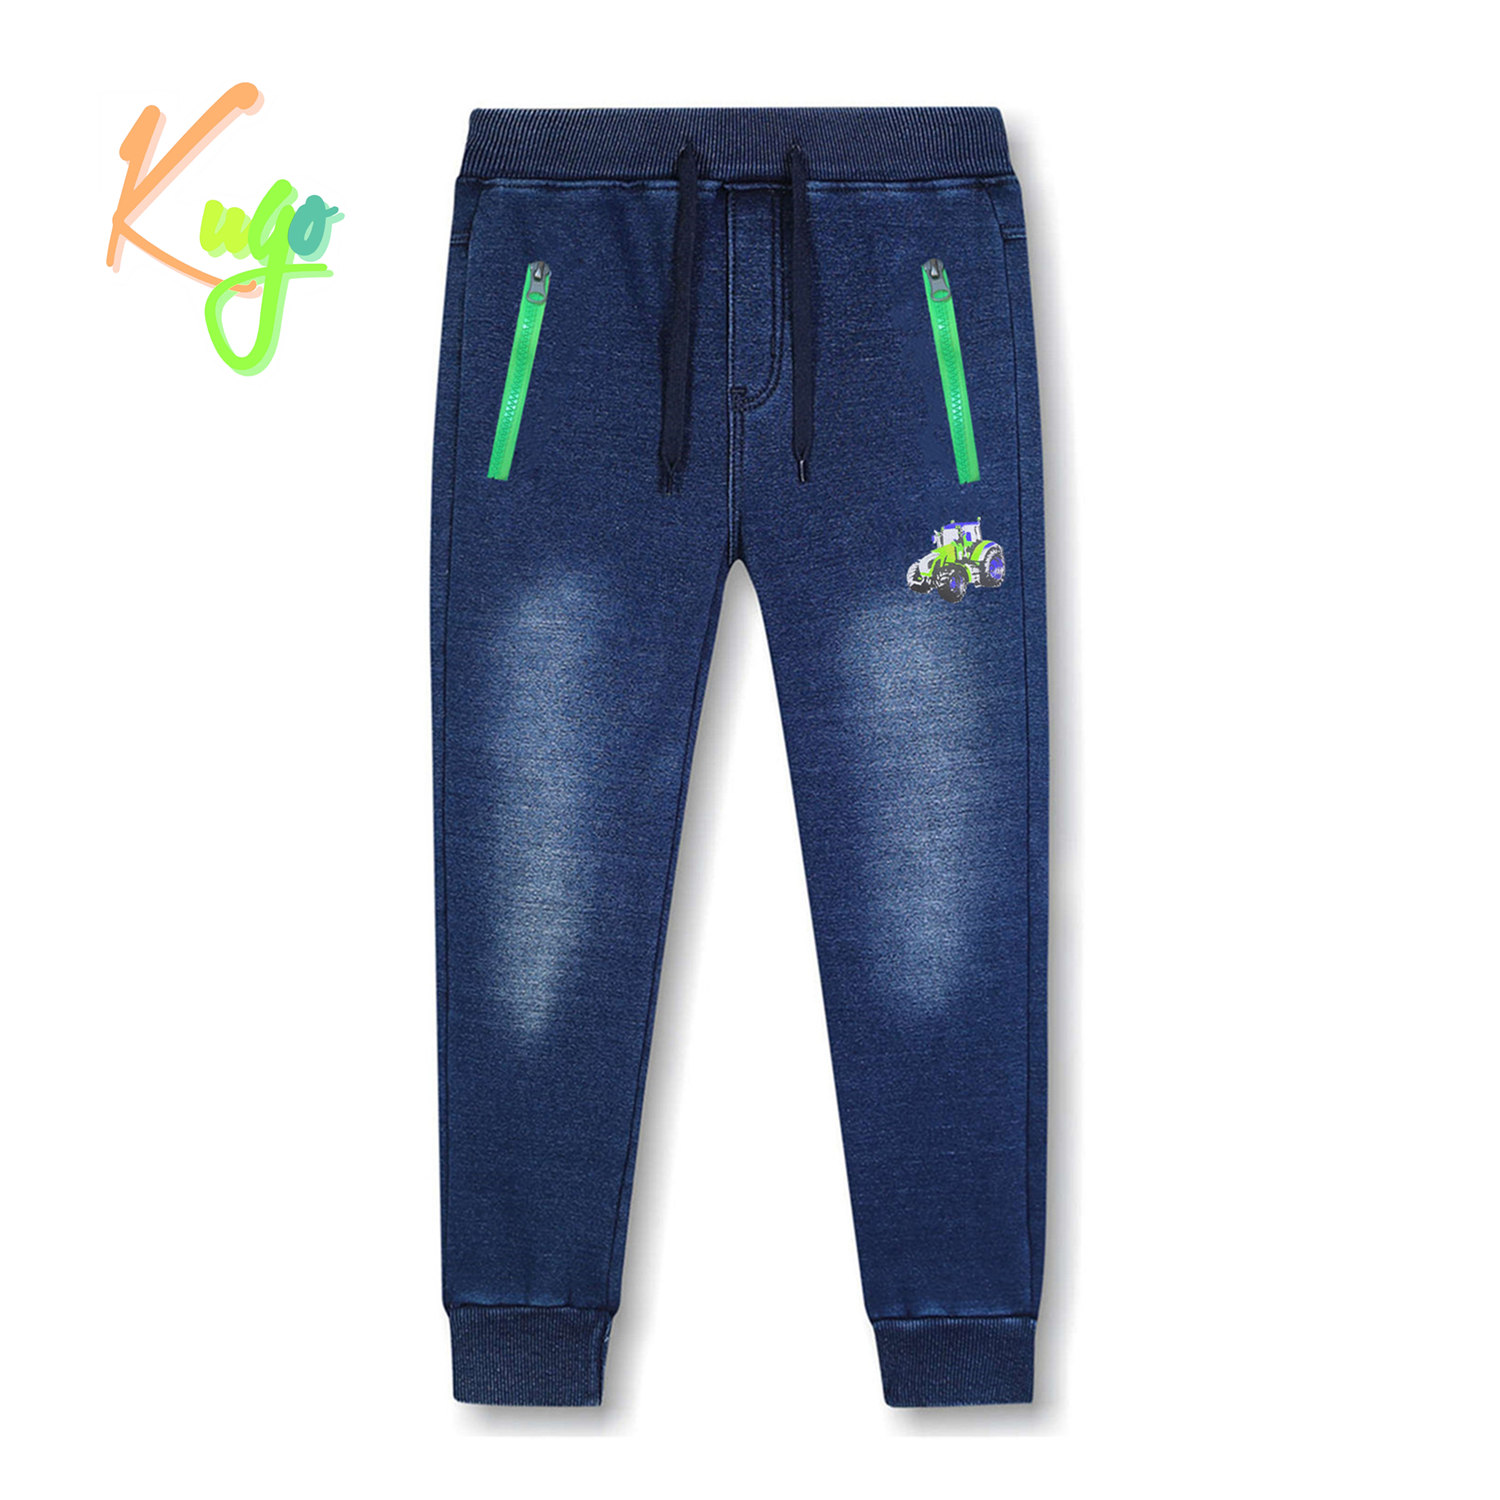 Chlapecké riflové kalhoty/ tepláky, zateplené - KUGO CK0923, modrá Barva: Modrá, Velikost: 116